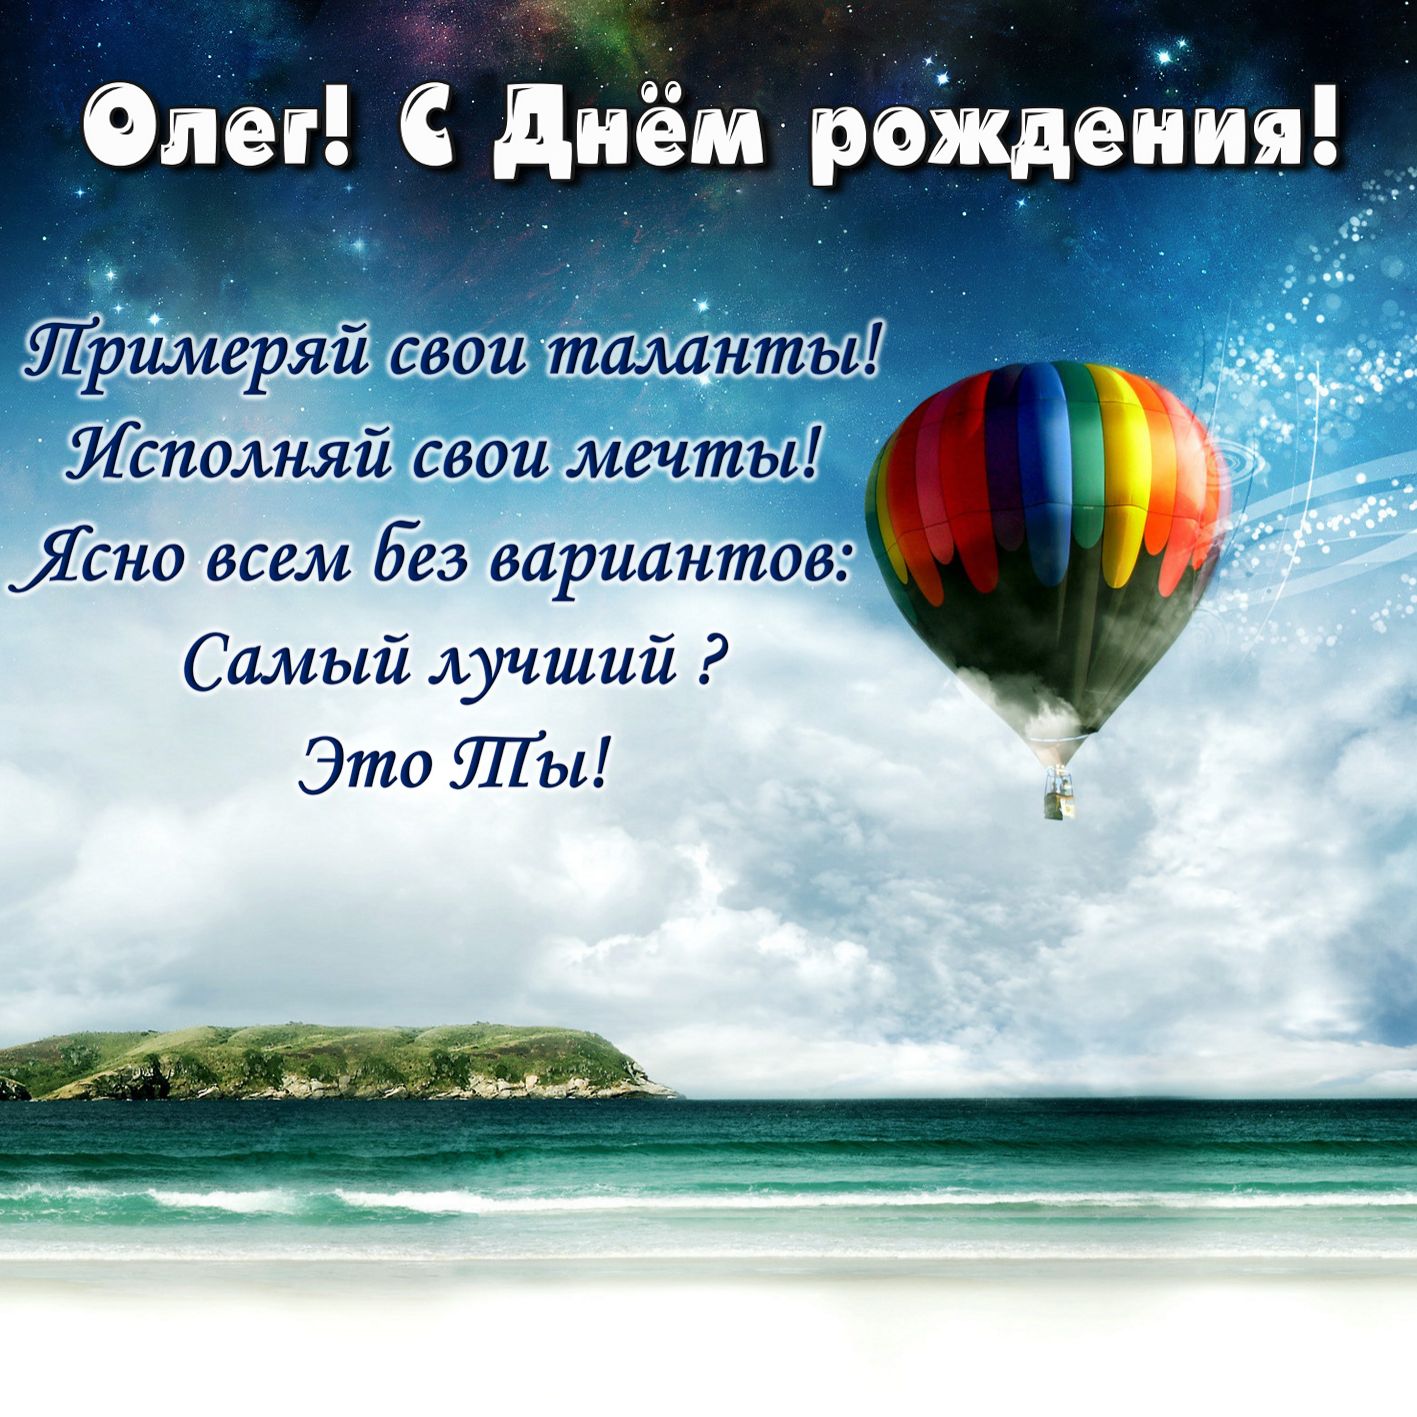 Открытка с воздушным шаром в небе на День рождения Олегу